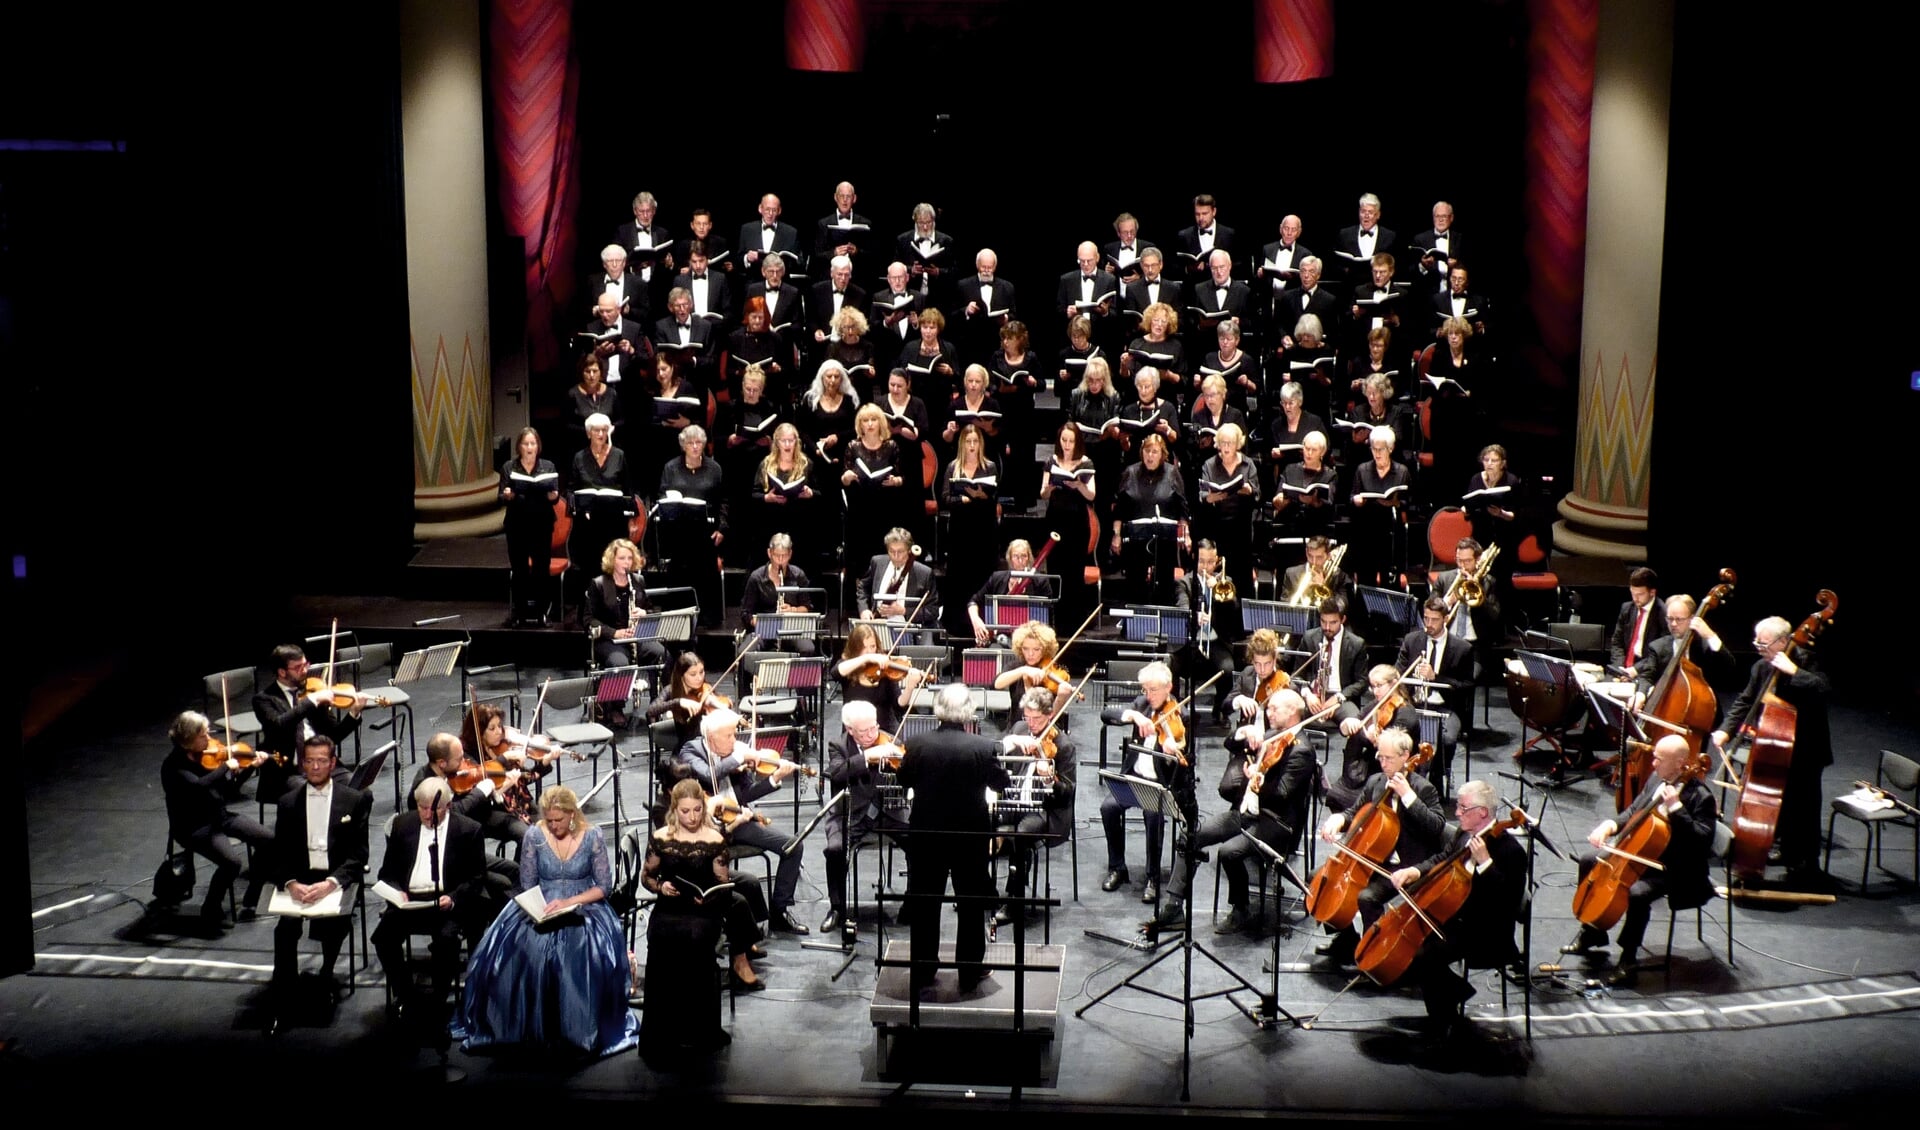 Hét Concertkoor in Theater de Maagd (november 2021)